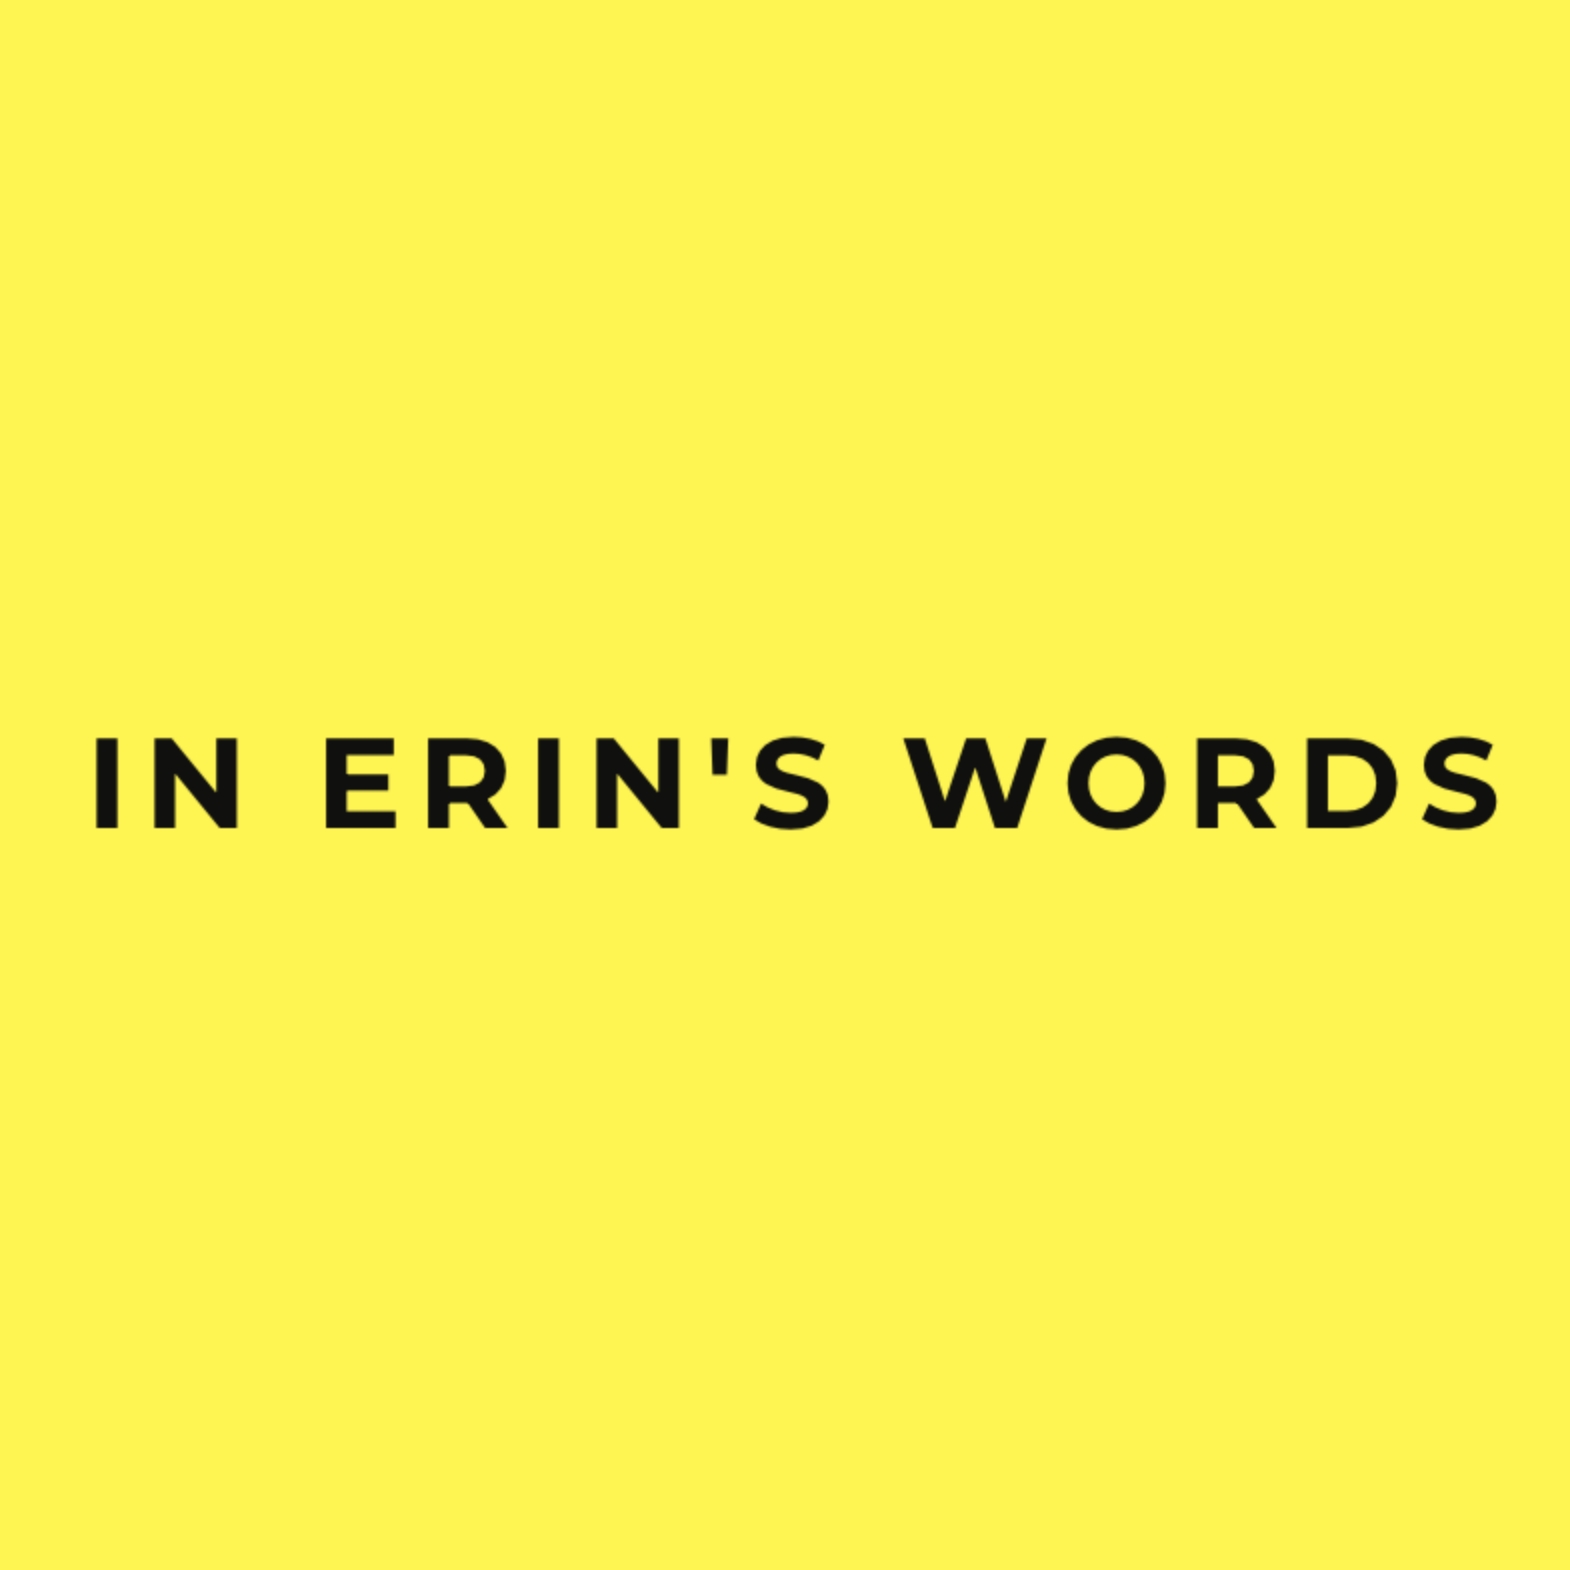 In-erins-words.jpg